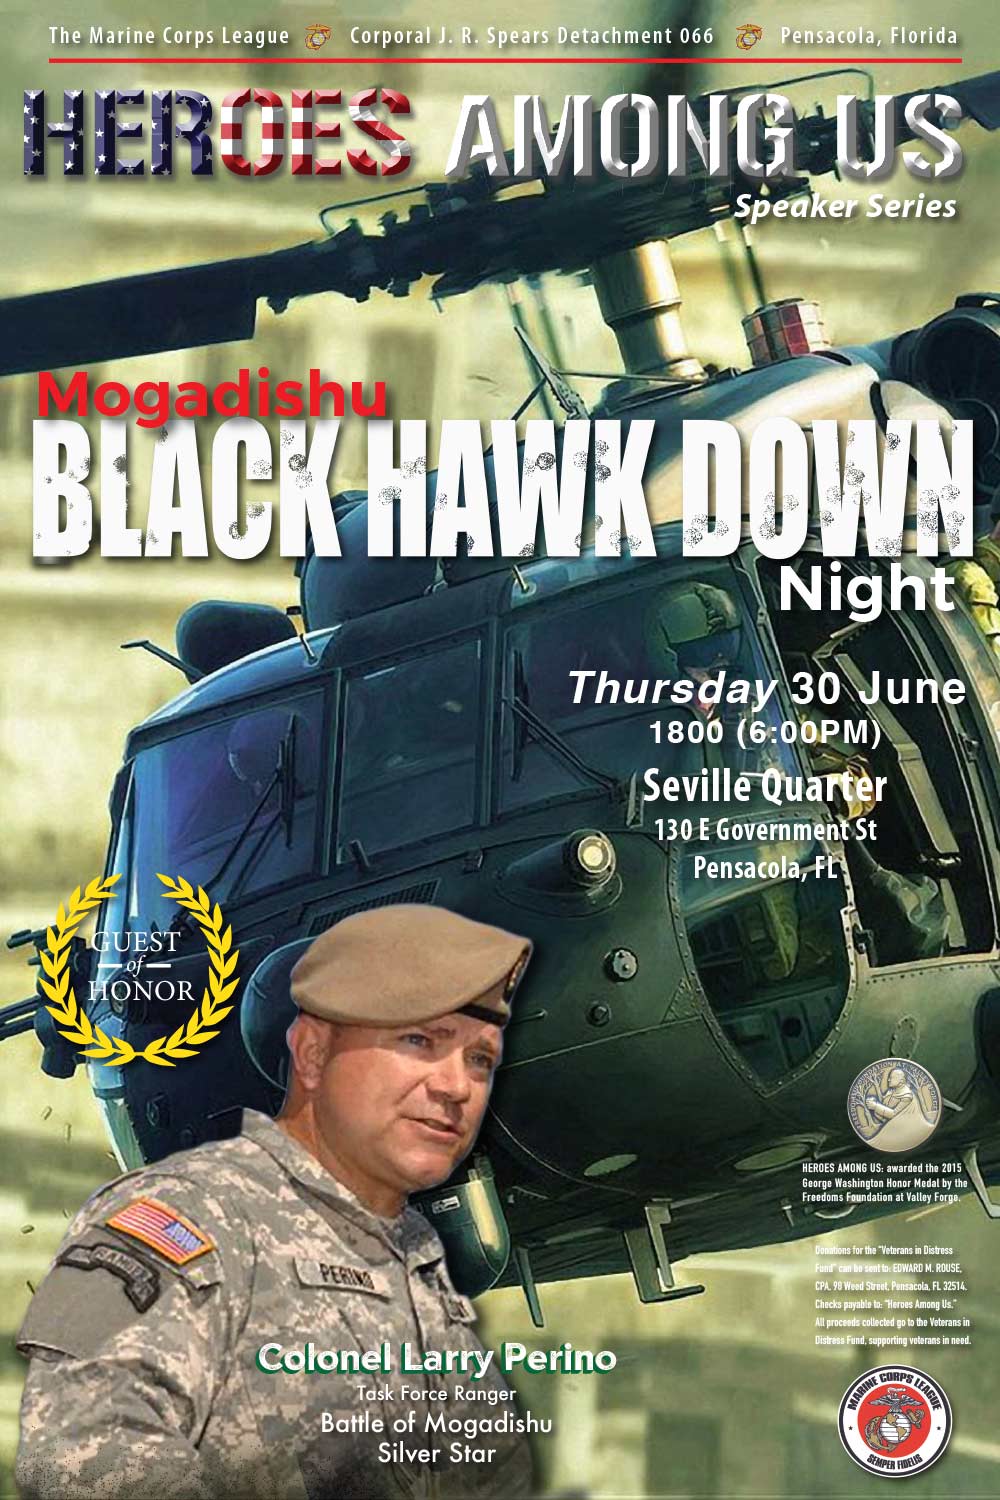 Blackhawk Down - Colonel Larry Perino, US Army